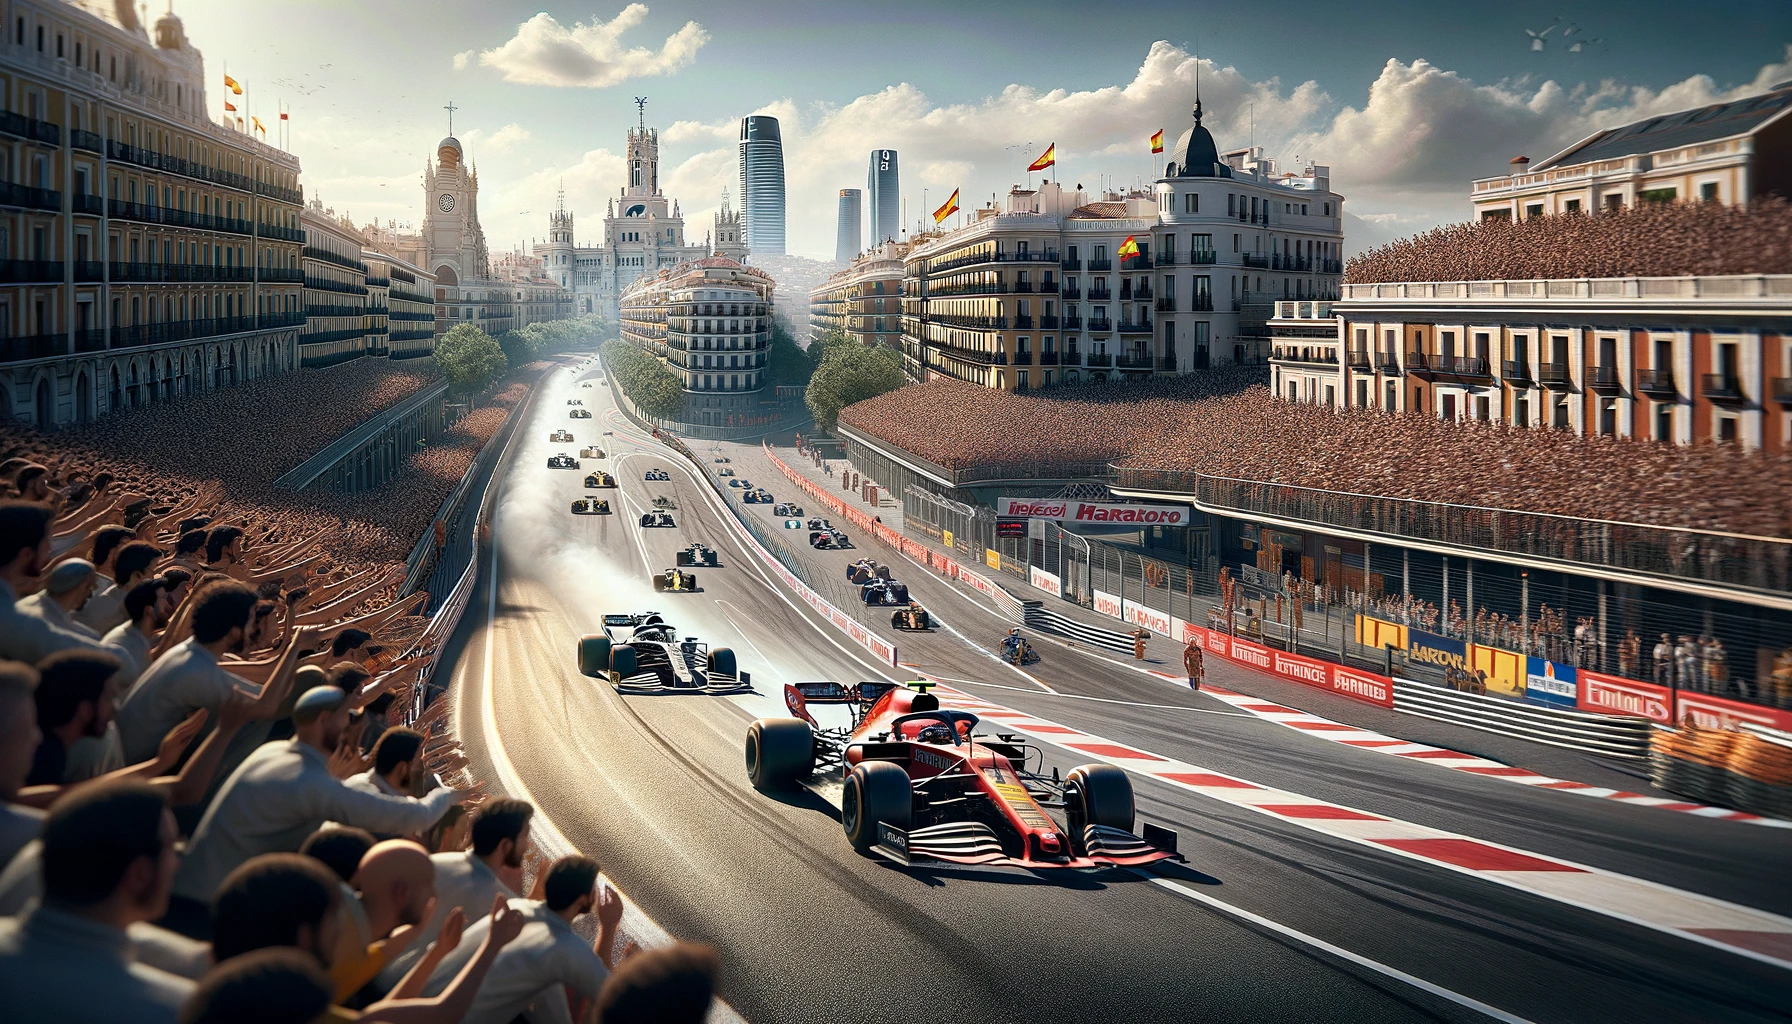 ثورة الفورمولا 1 في مدريد: فصل جديد في رياضة السيارات الإسبانية!